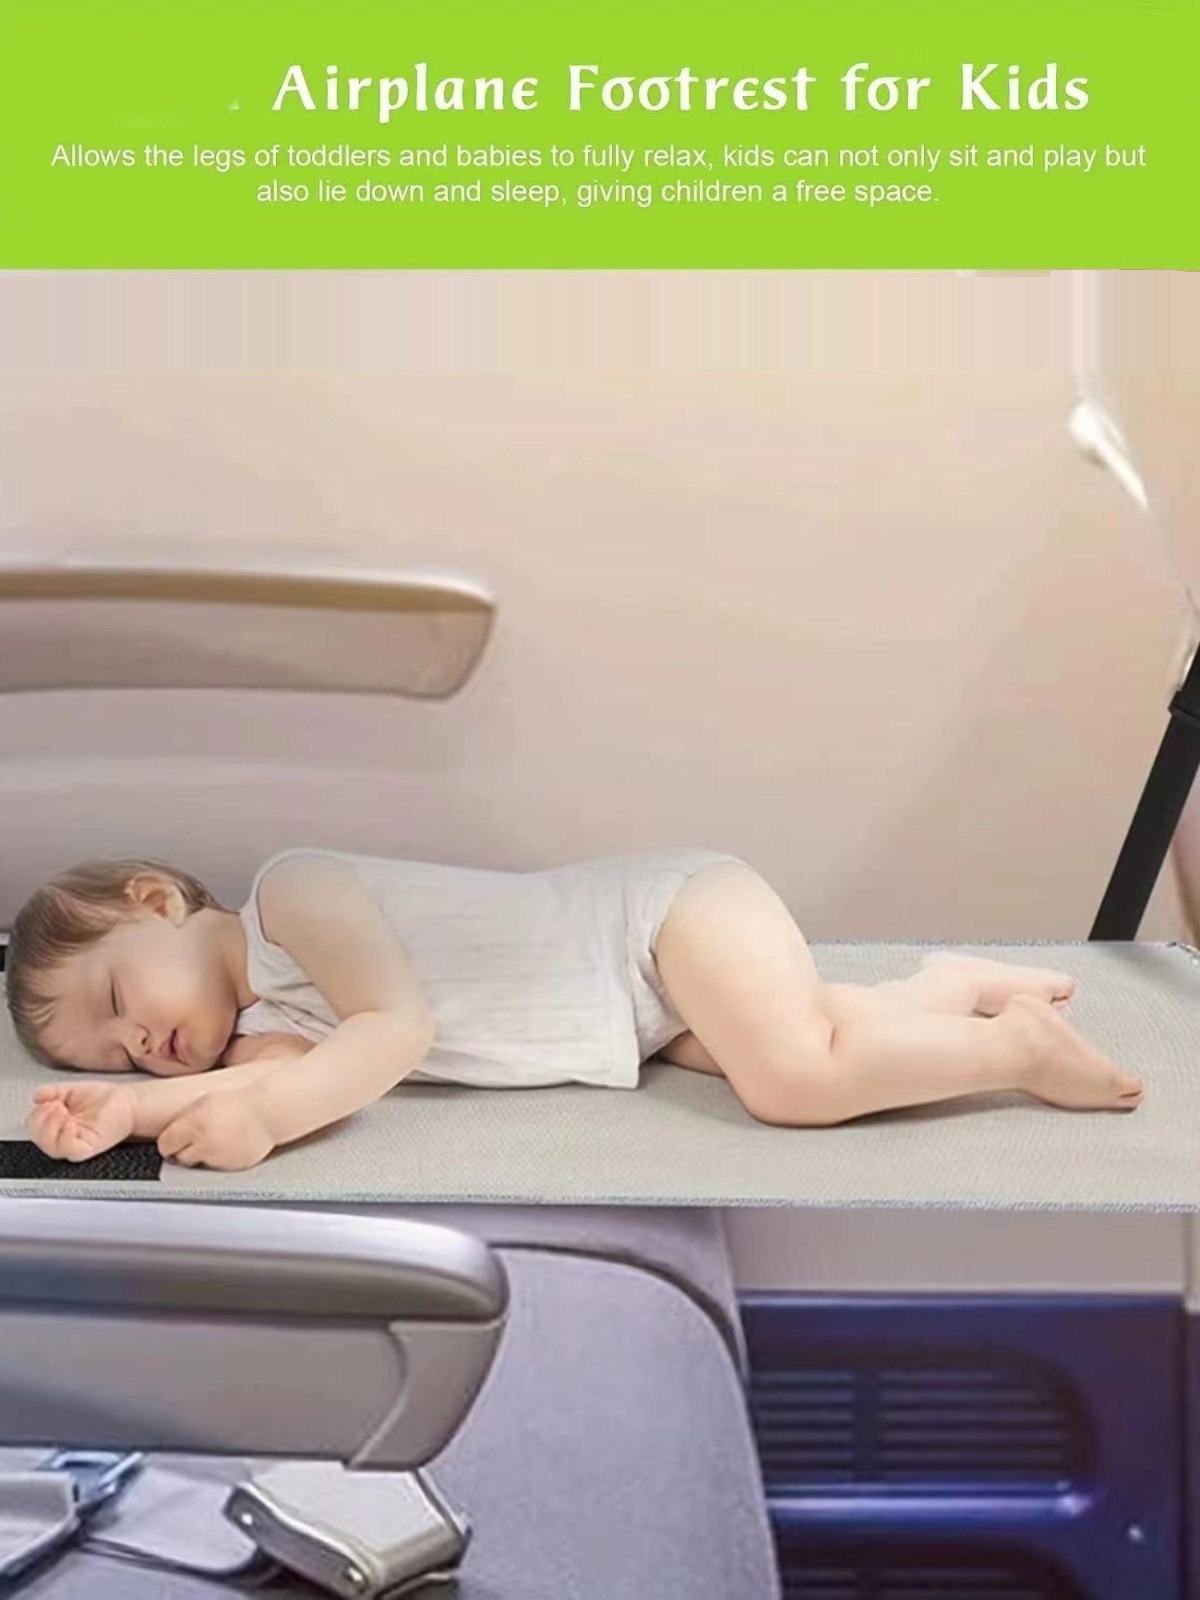 便携儿童飞机旅行床 婴儿飞机汽车座椅扩展吊床飞机脚踏板旅行床